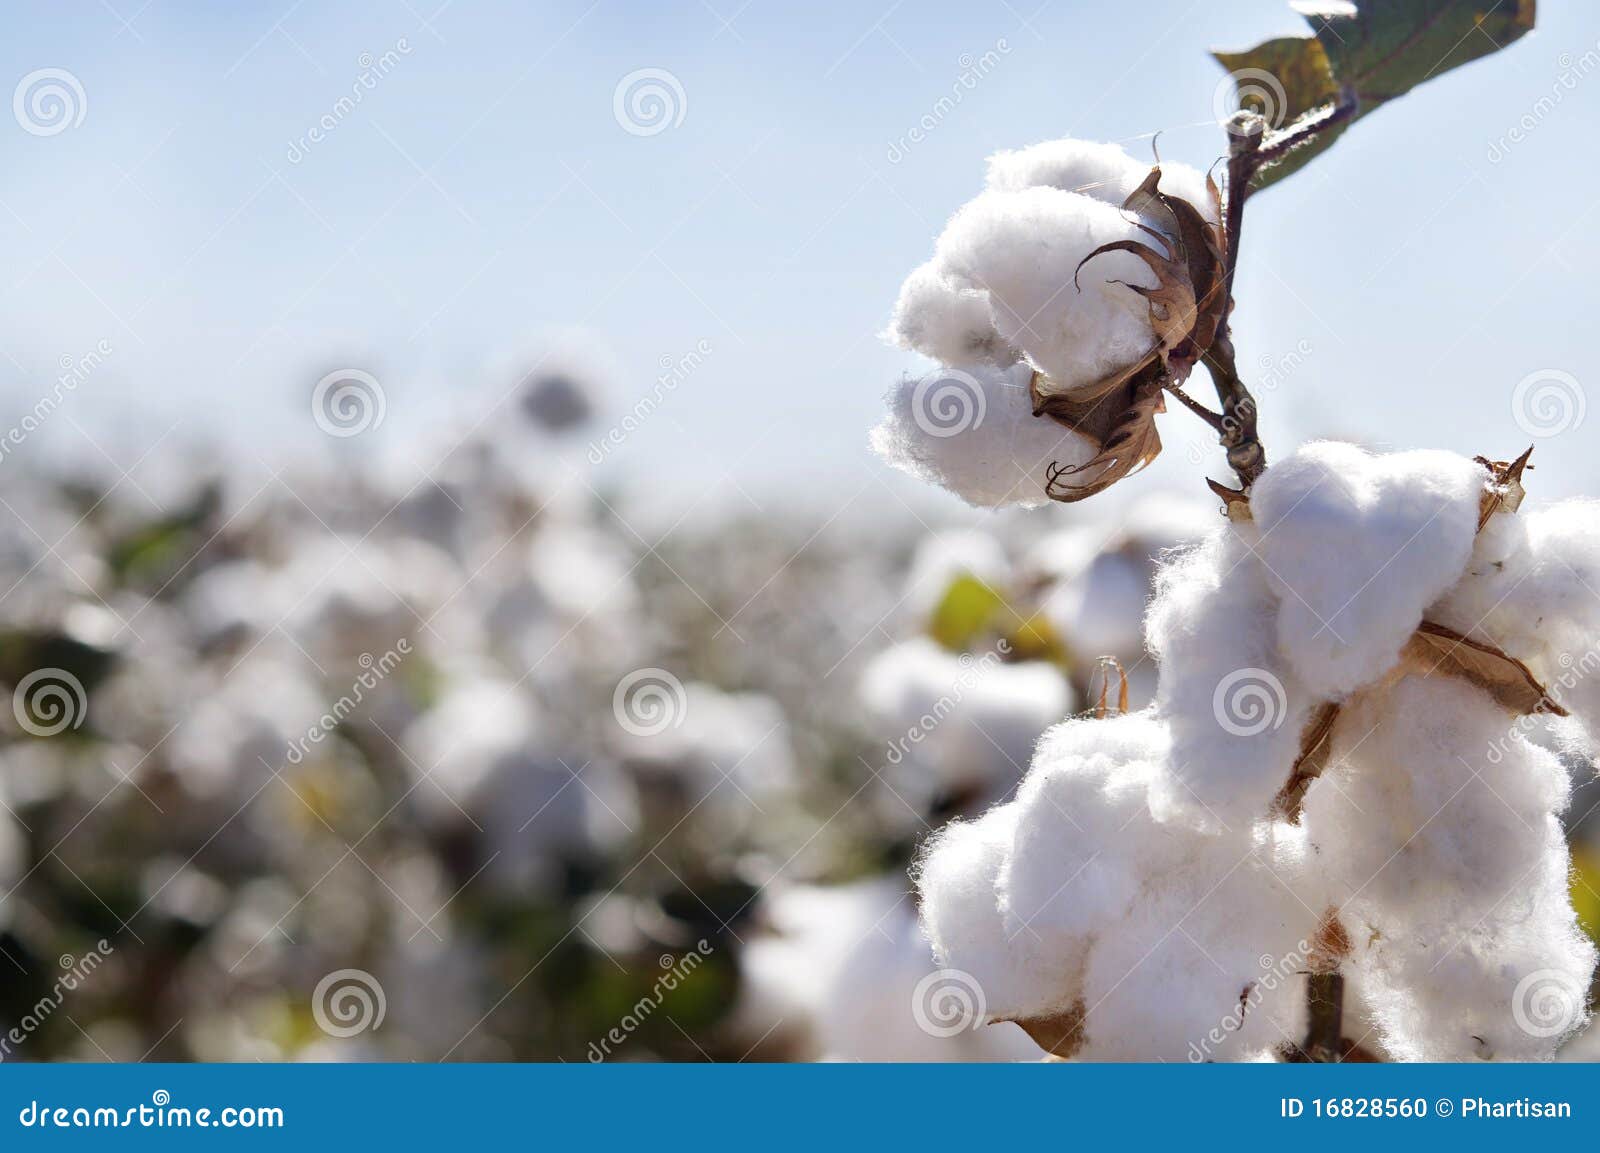 cotton bud in field